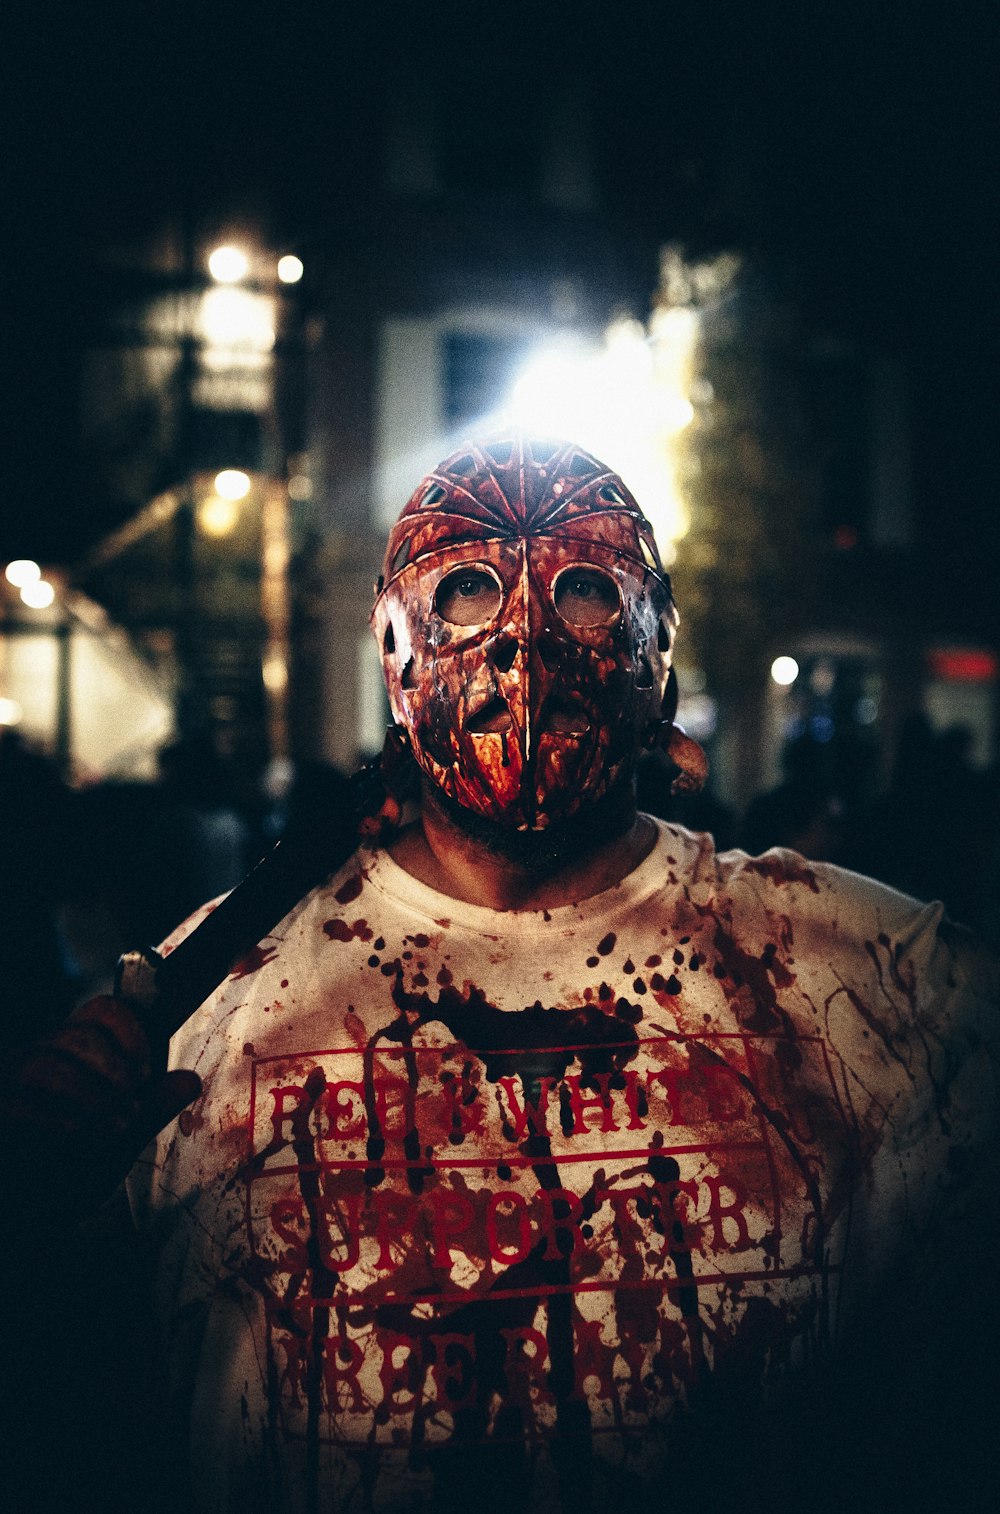 Mann mit Halloween-Maske